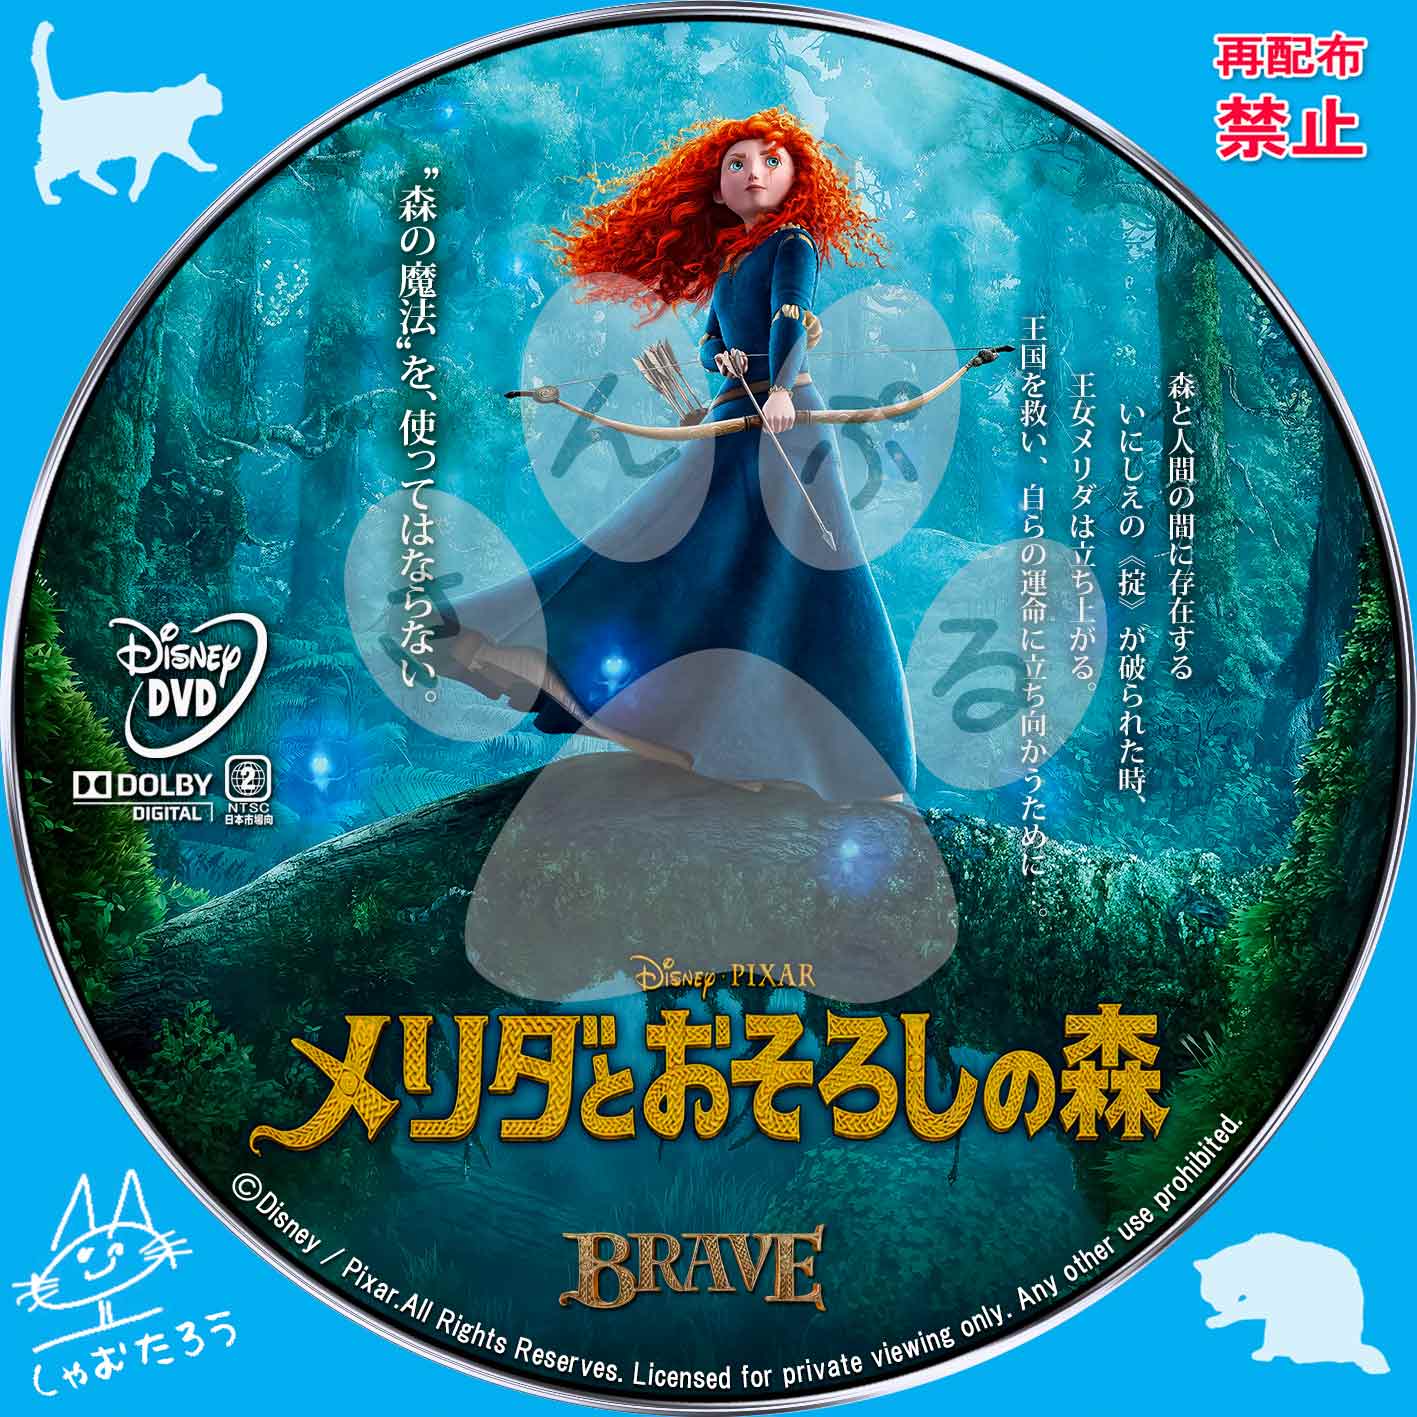 600 レンタル版cd 133 Disney オリジナル サウンドトラック メリダとおそろしの森 新入荷 流行 メリダとおそろしの森